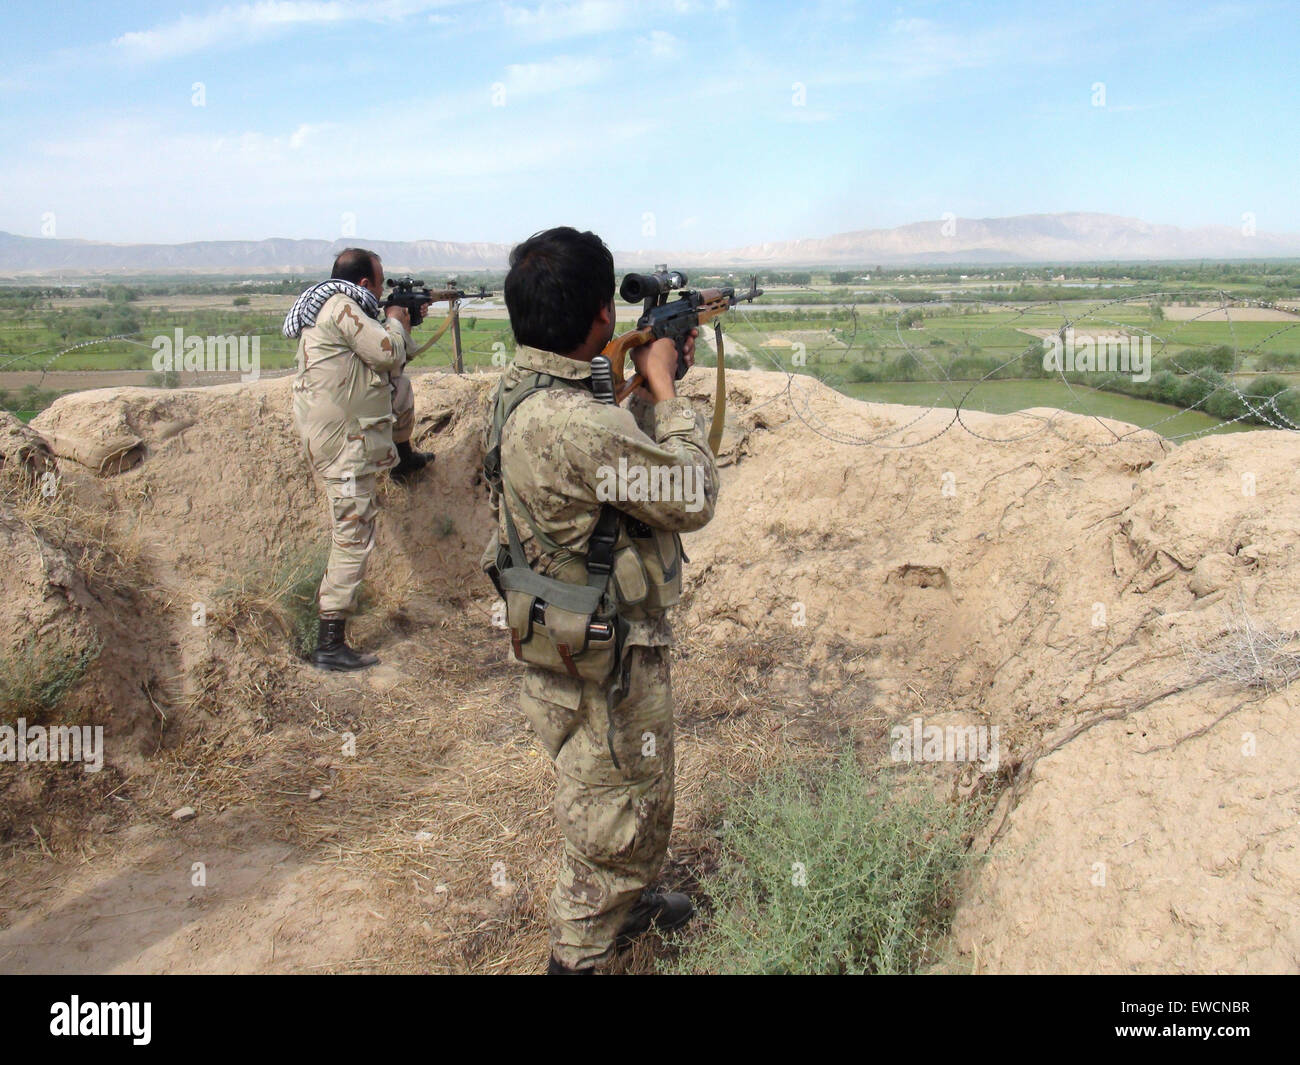 (150623) -- KUNDUZ, 23 giugno 2015 (Xinhua) -- cecchini afghani obiettivo le loro armi verso militanti talebani durante un'operazione contro i talebani nella provincia di Kunduz, Afghanistan settentrionale, 23 giugno 2015. Forze di sicurezza nazionali afgane (ANSF) Martedì riconquistò un distretto nel nord della provincia di Kunduz sequestrato da militanti talebani durante il fine settimana, uccidendo oltre 80 ribelli, provinciale portavoce del governo ha detto. (Xinhua/Ajmal) (zjy) Foto Stock